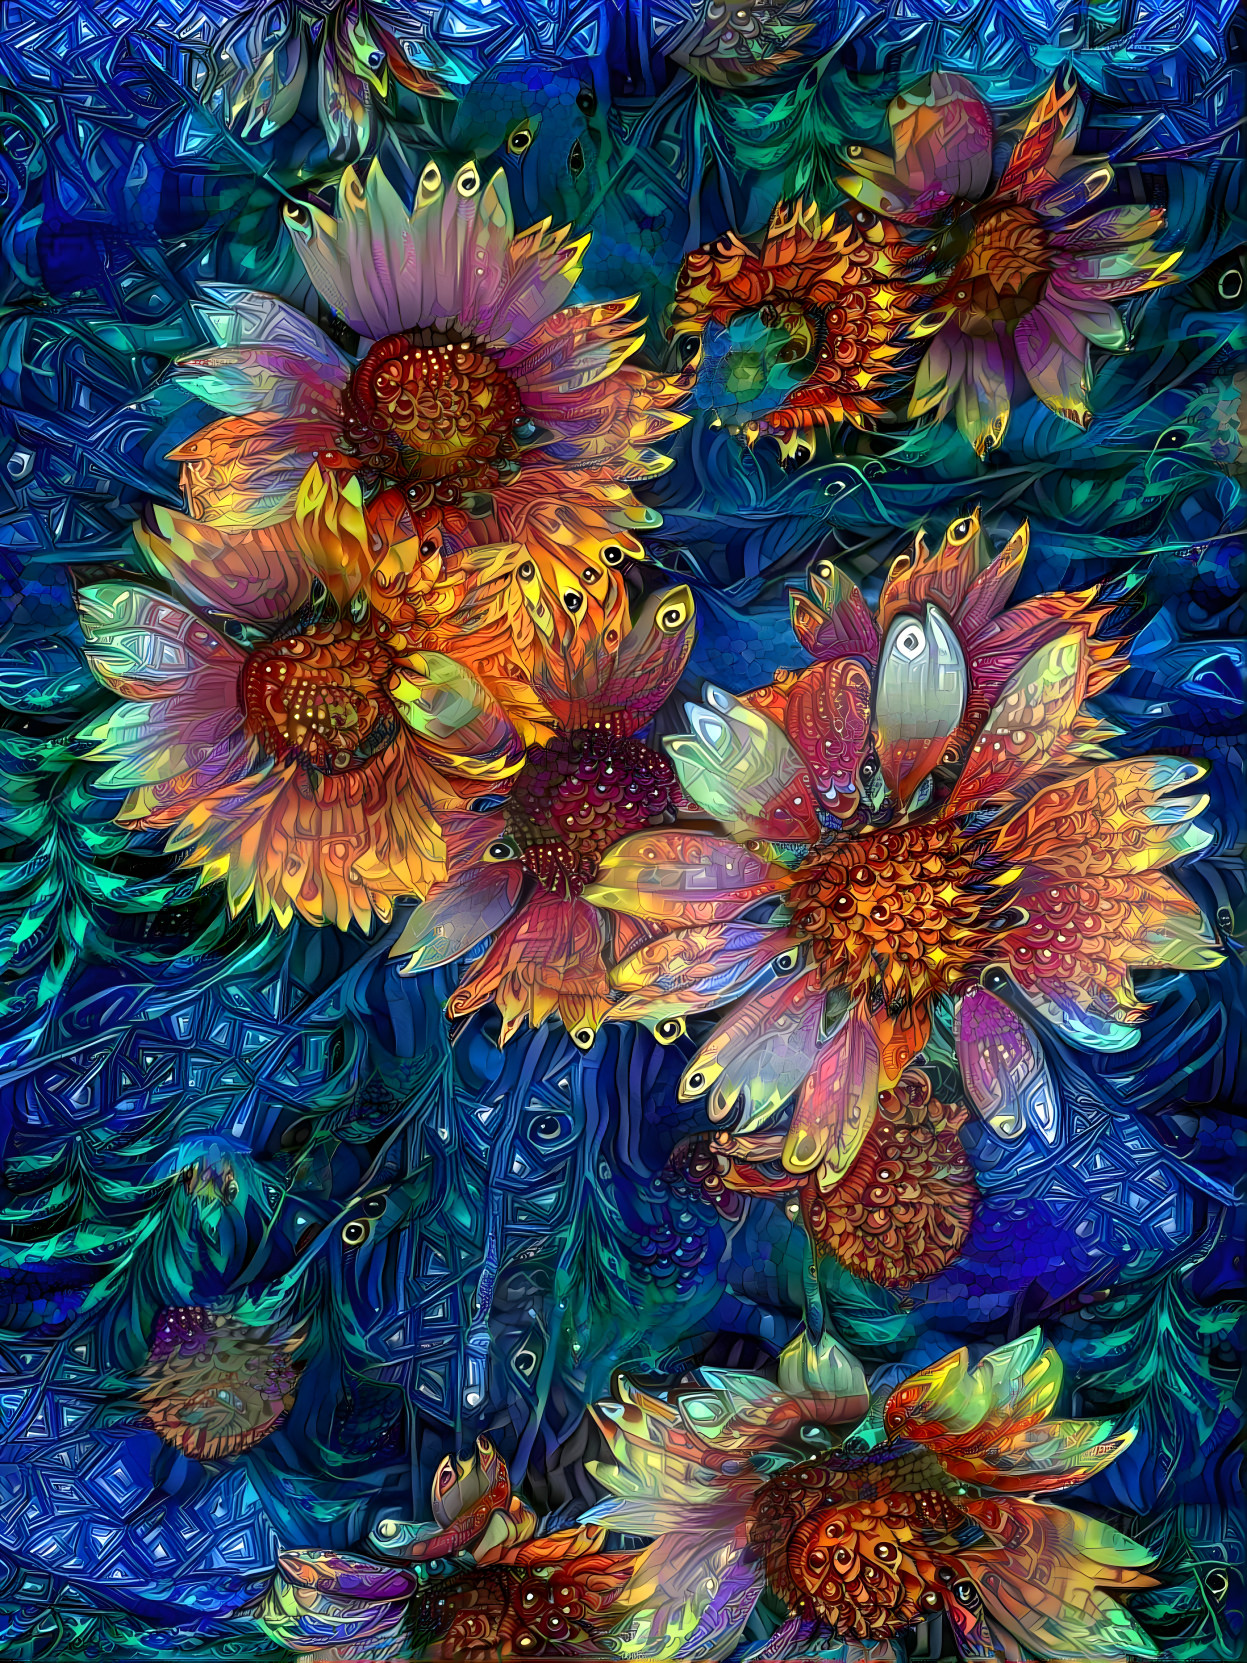 blanket flowers, favorite of the bees